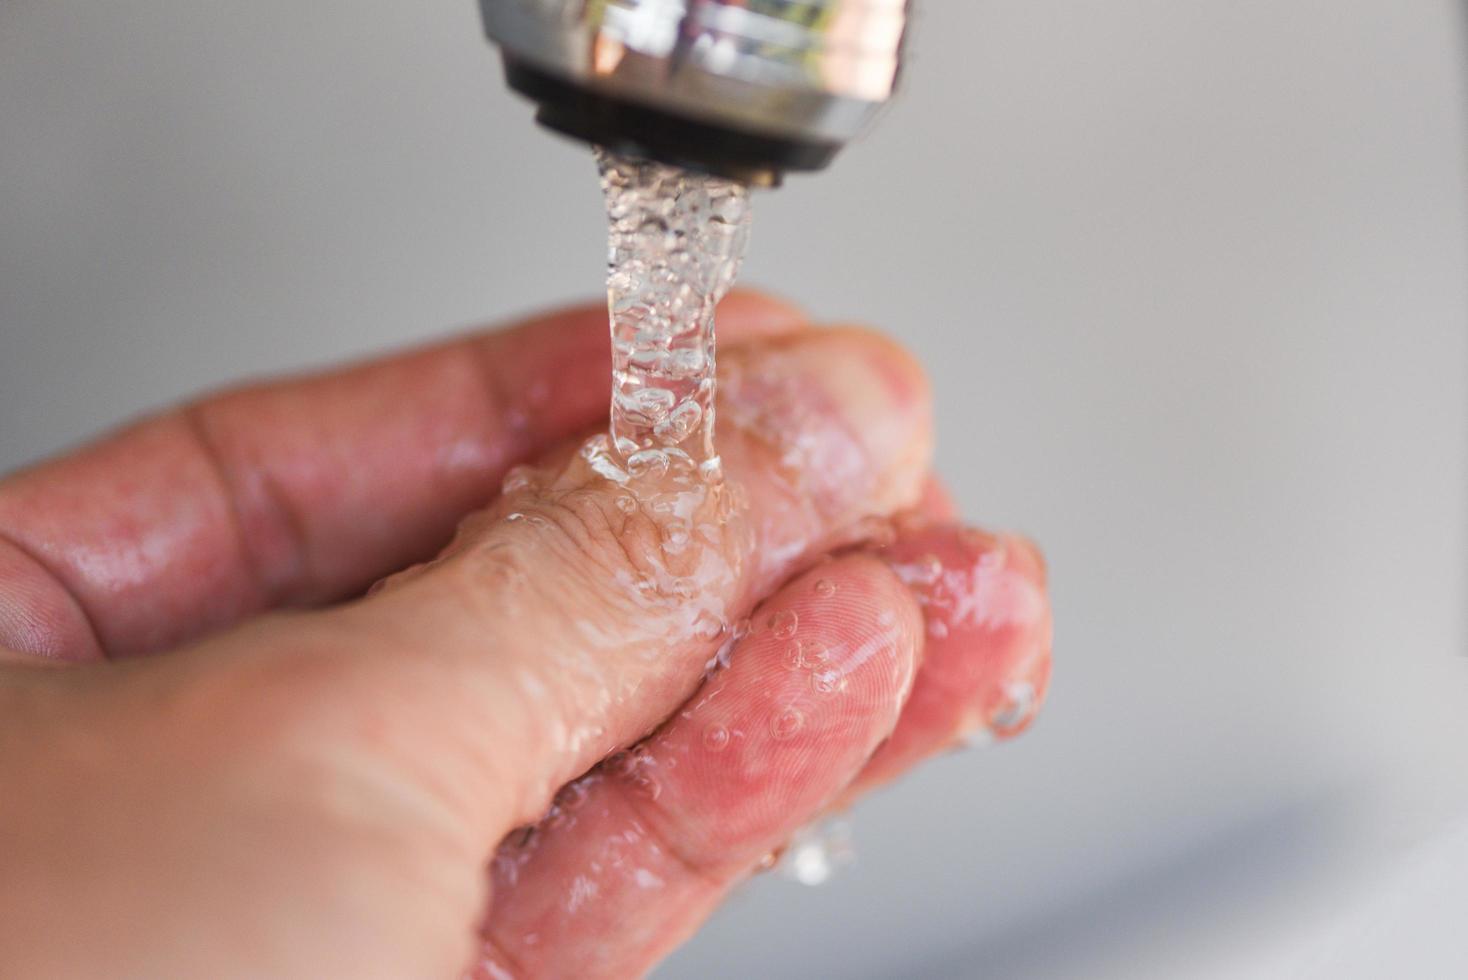 detalhes do conceito de higiene fluxo de água no banheiro - lavar as mãos embaixo da torneira ou torneira foto